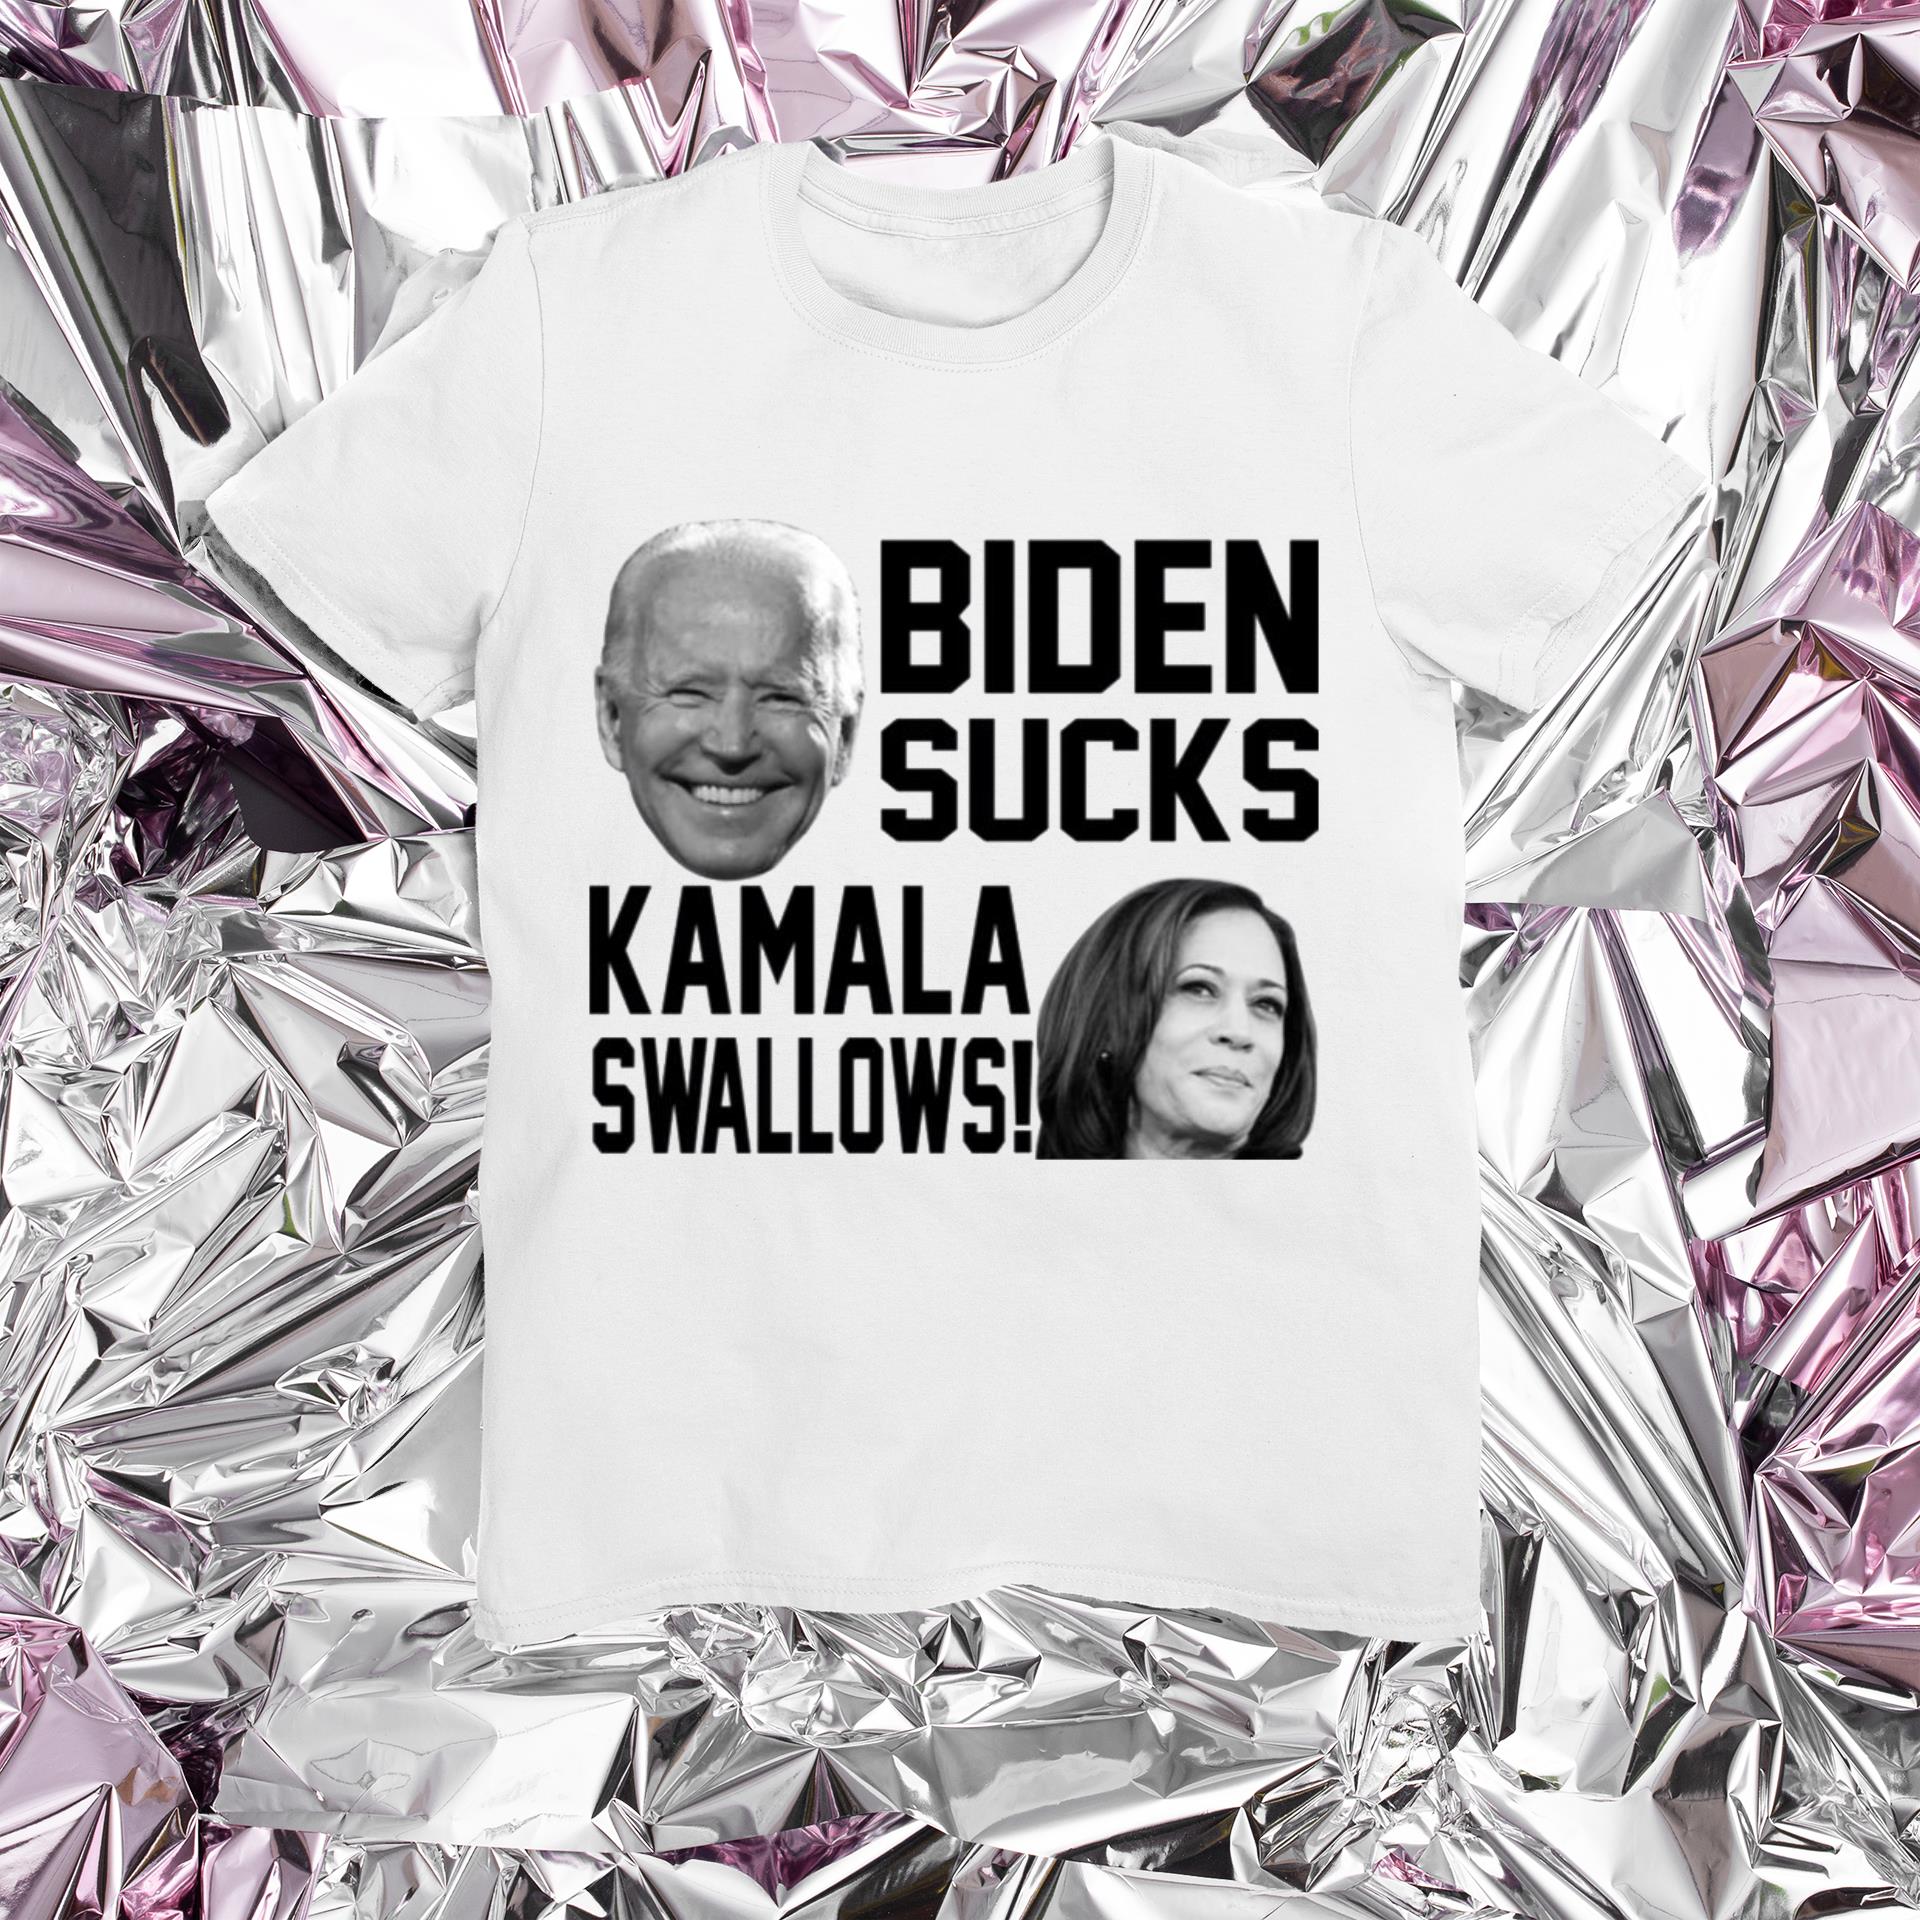 Kamala swallows Biden sucks shirt 2